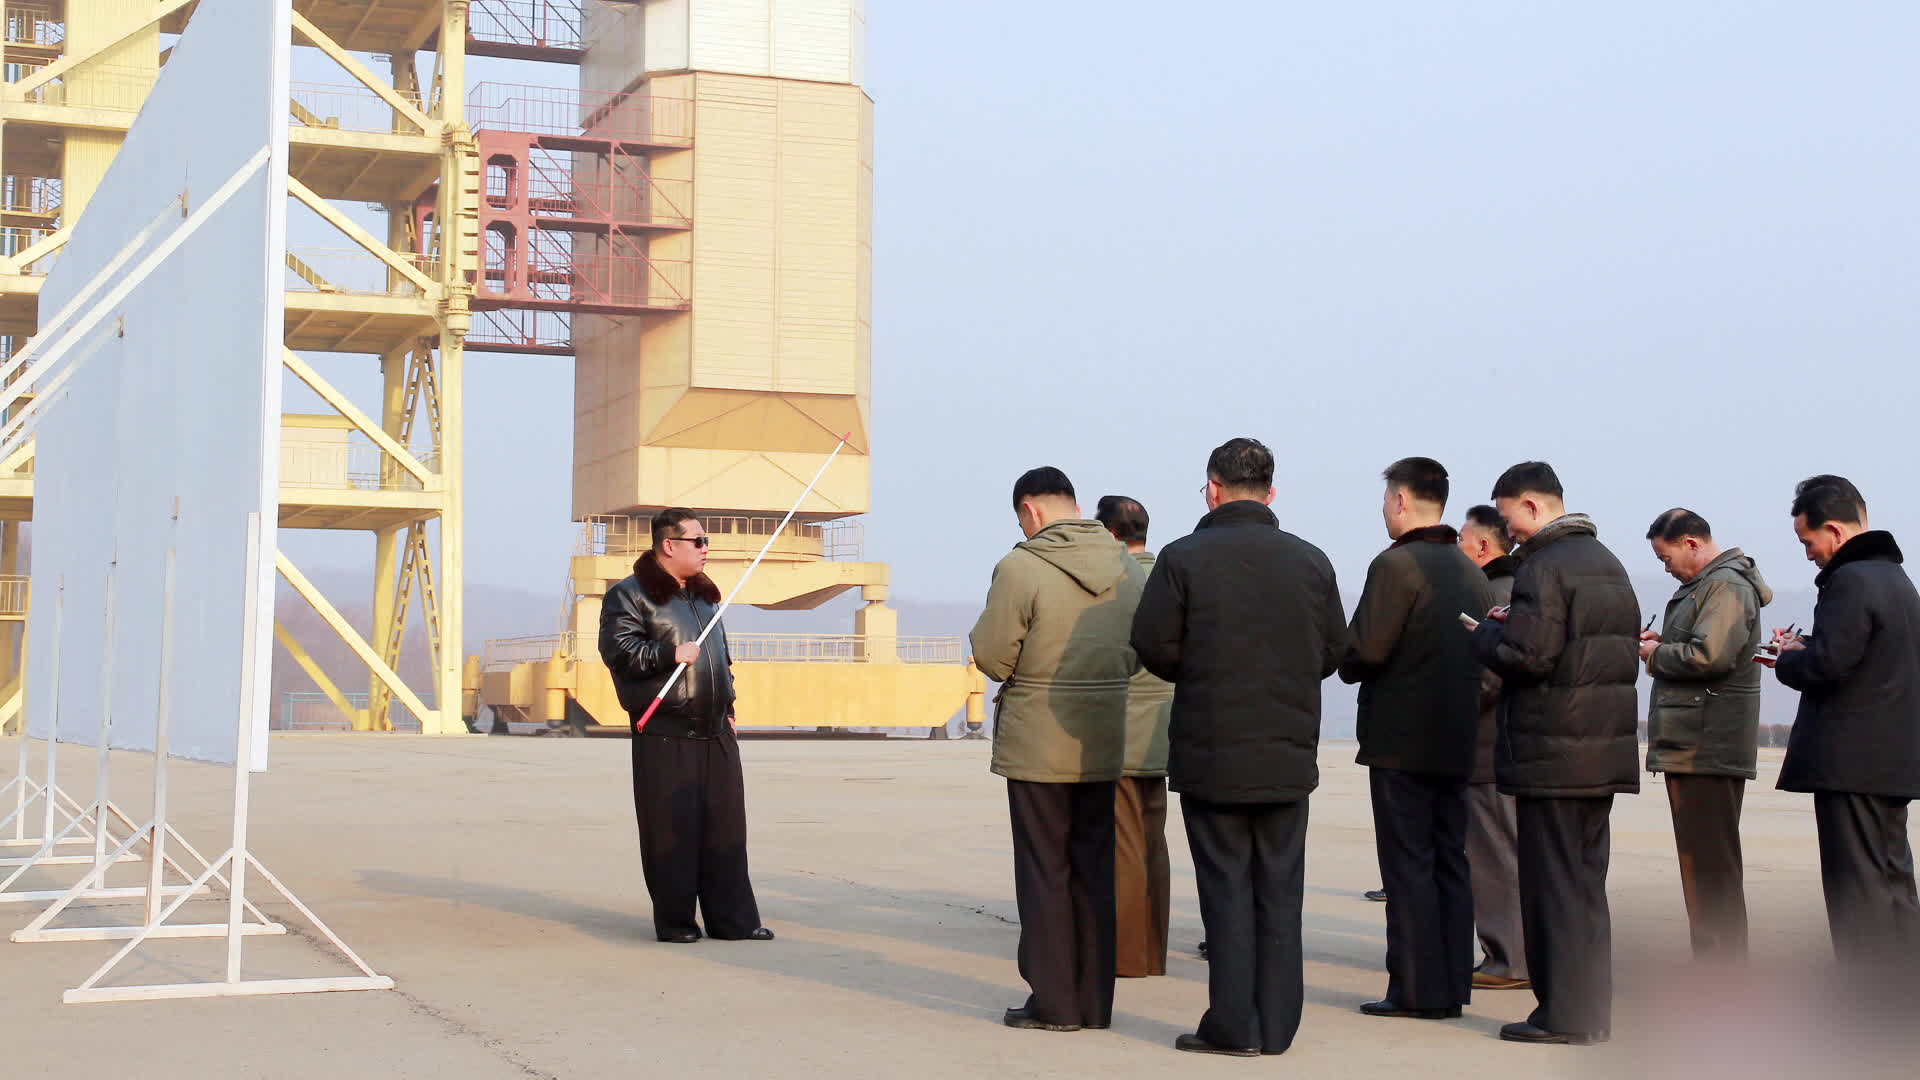 지난달 서해위성발사장을 찾아 시설 현대화를 지시하는 김정은 위원장. 검은색 가죽 재킷을 입고 있다.